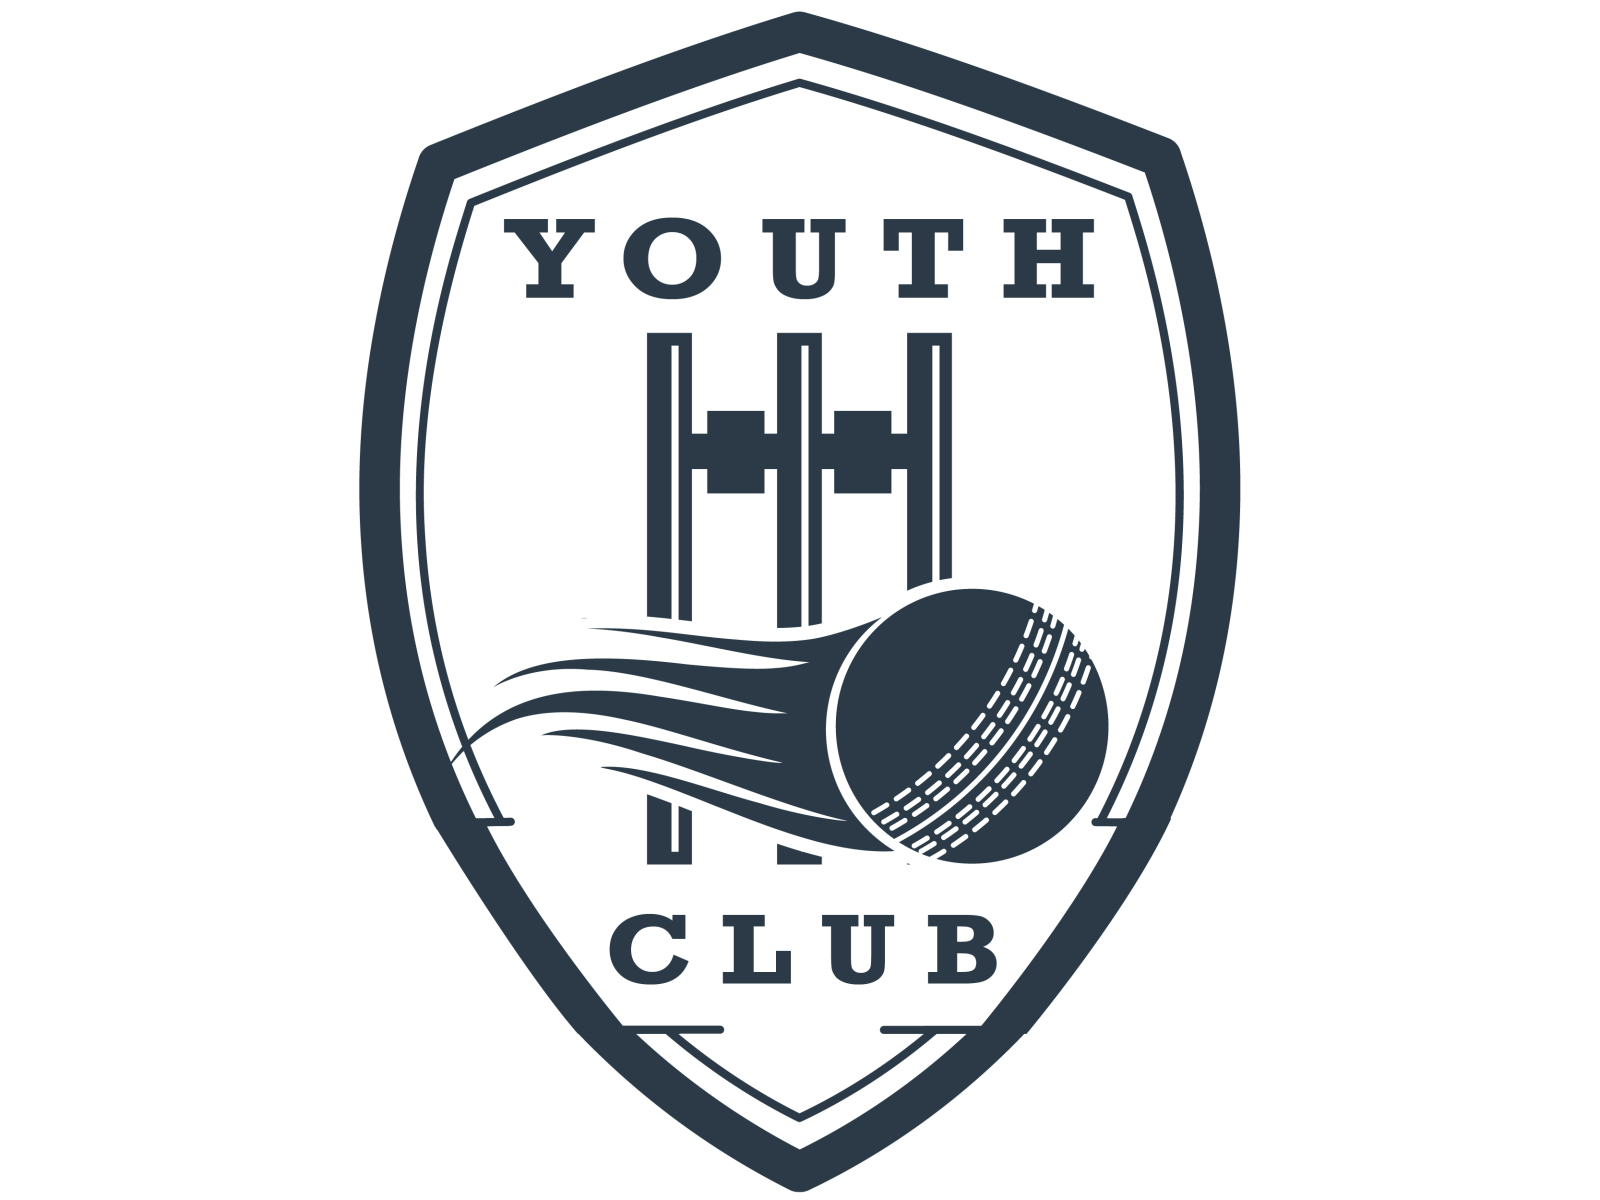 Youth Cricket Club Logo 2 By Tarun Agarwal On Dribbble